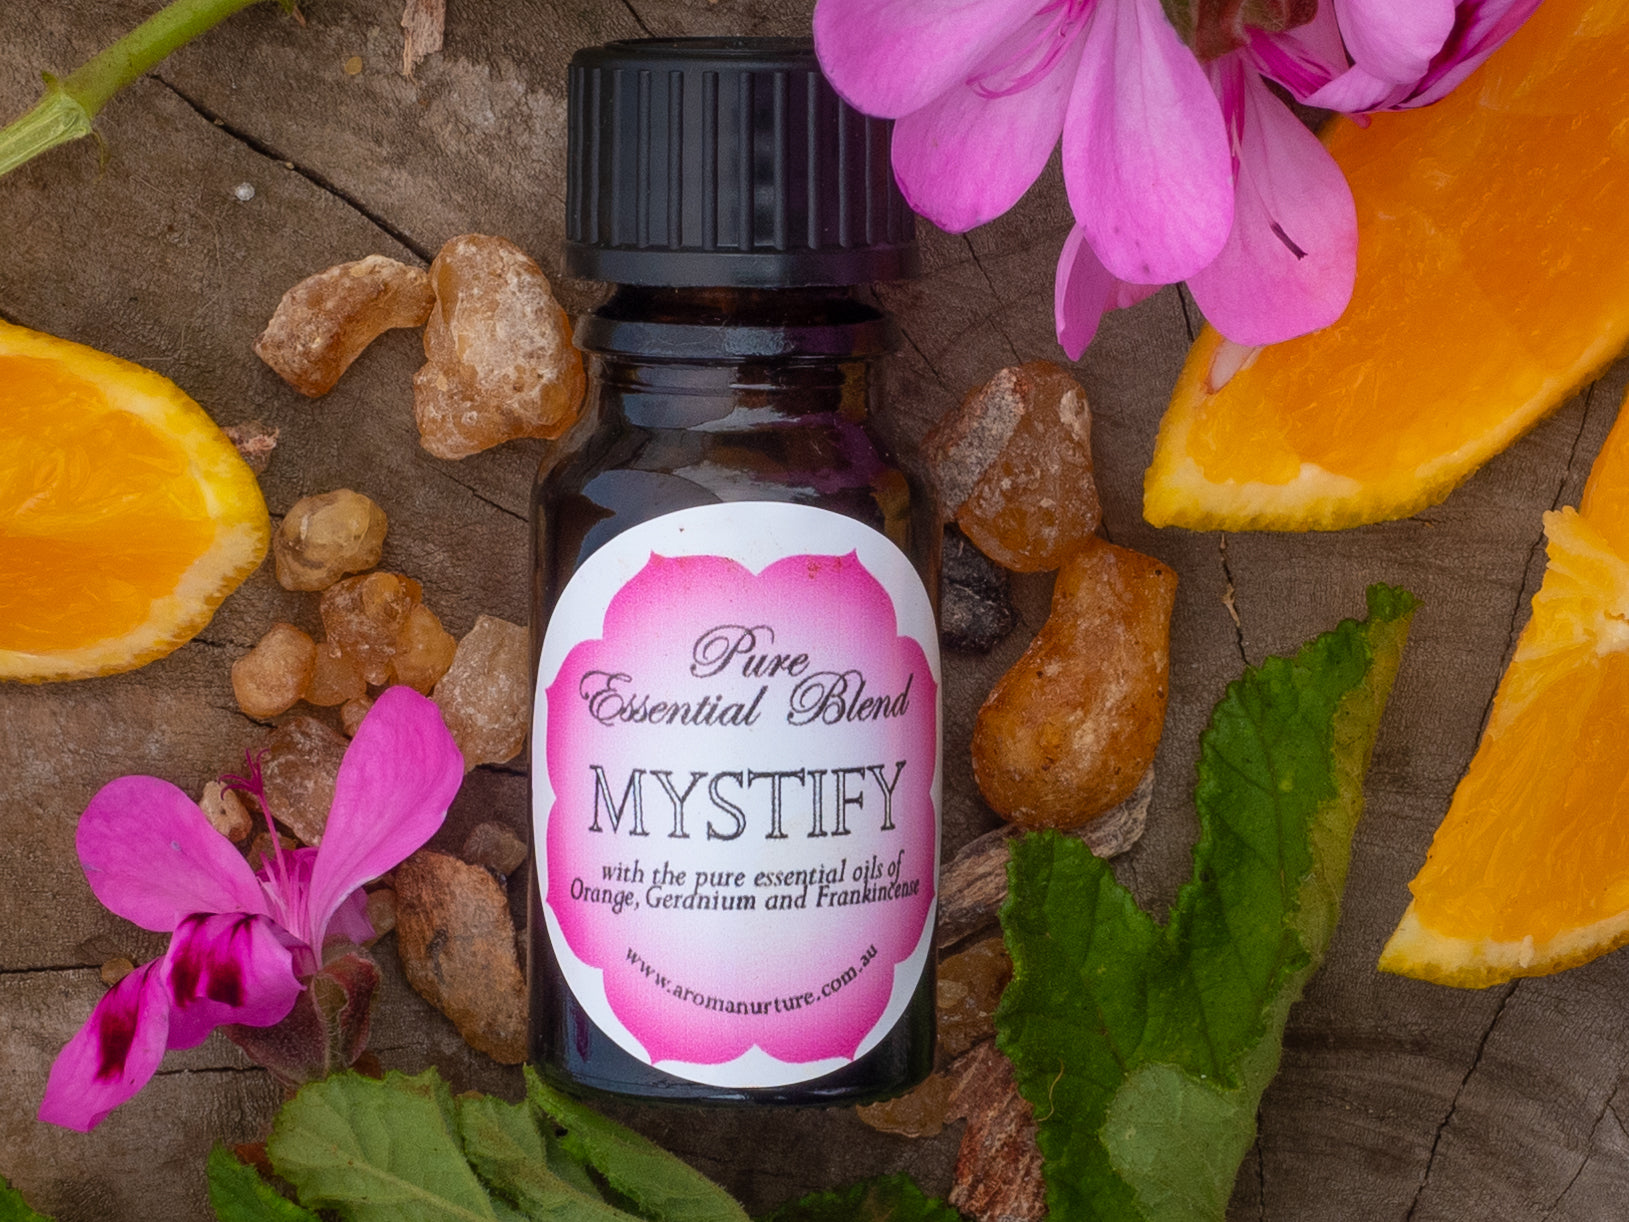 Mystify essential oil blend